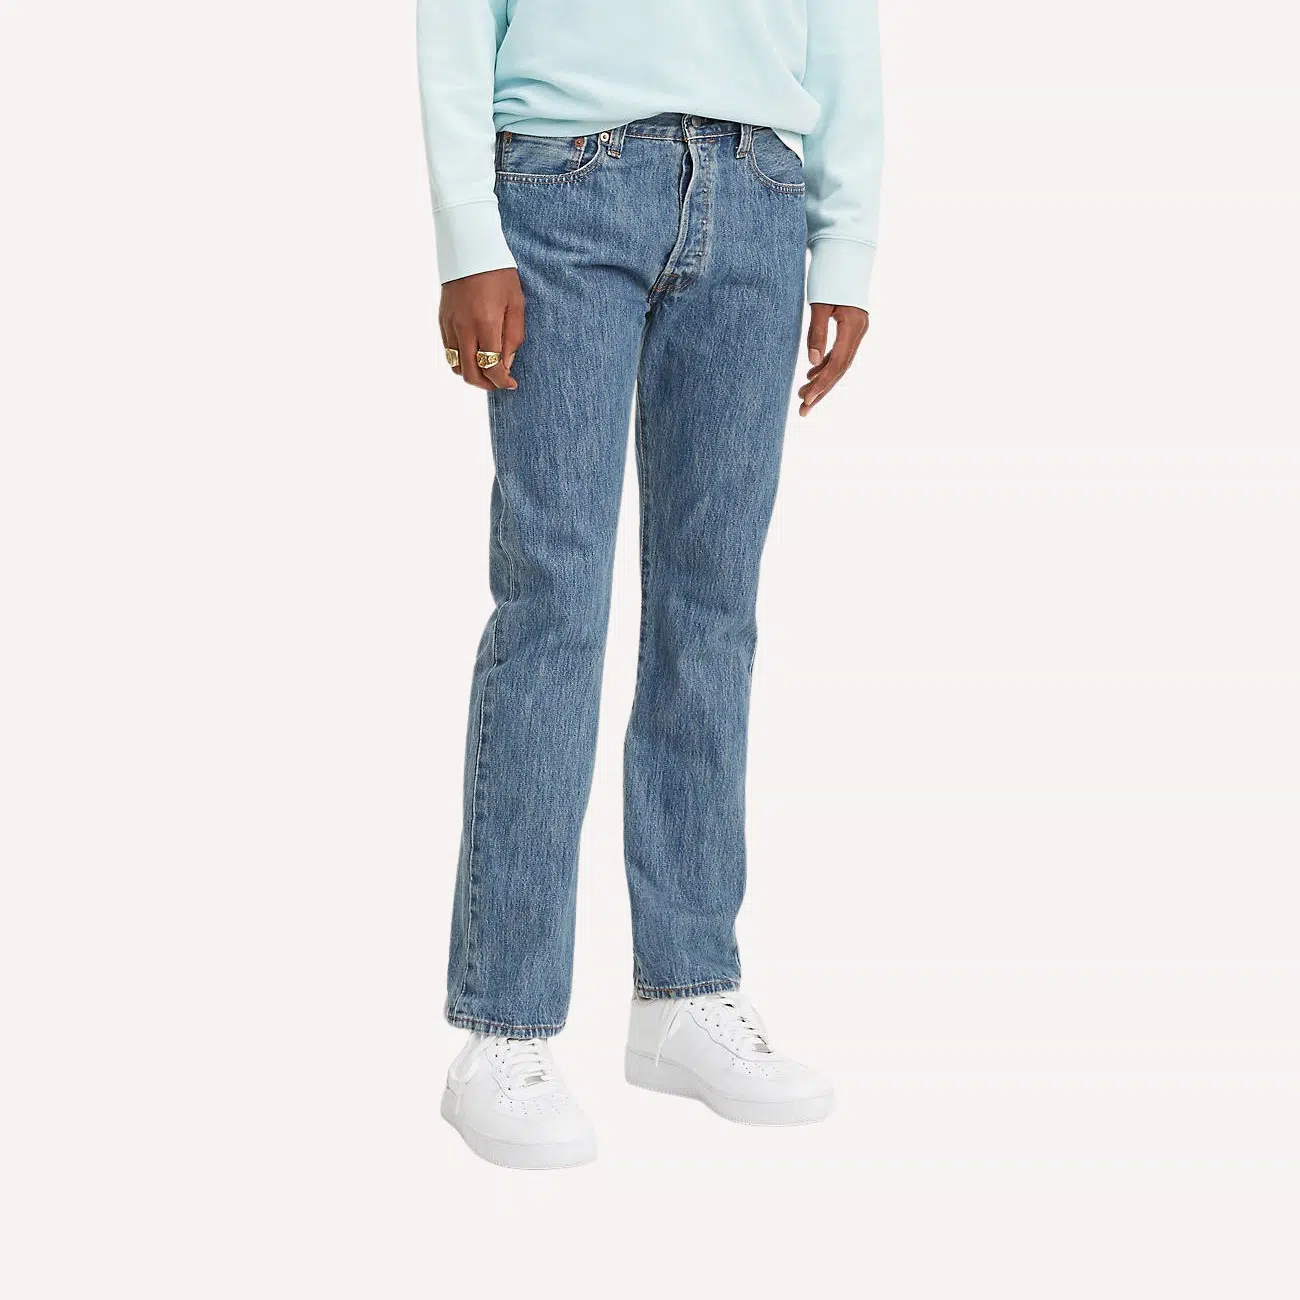 501 Original Fit Jeans